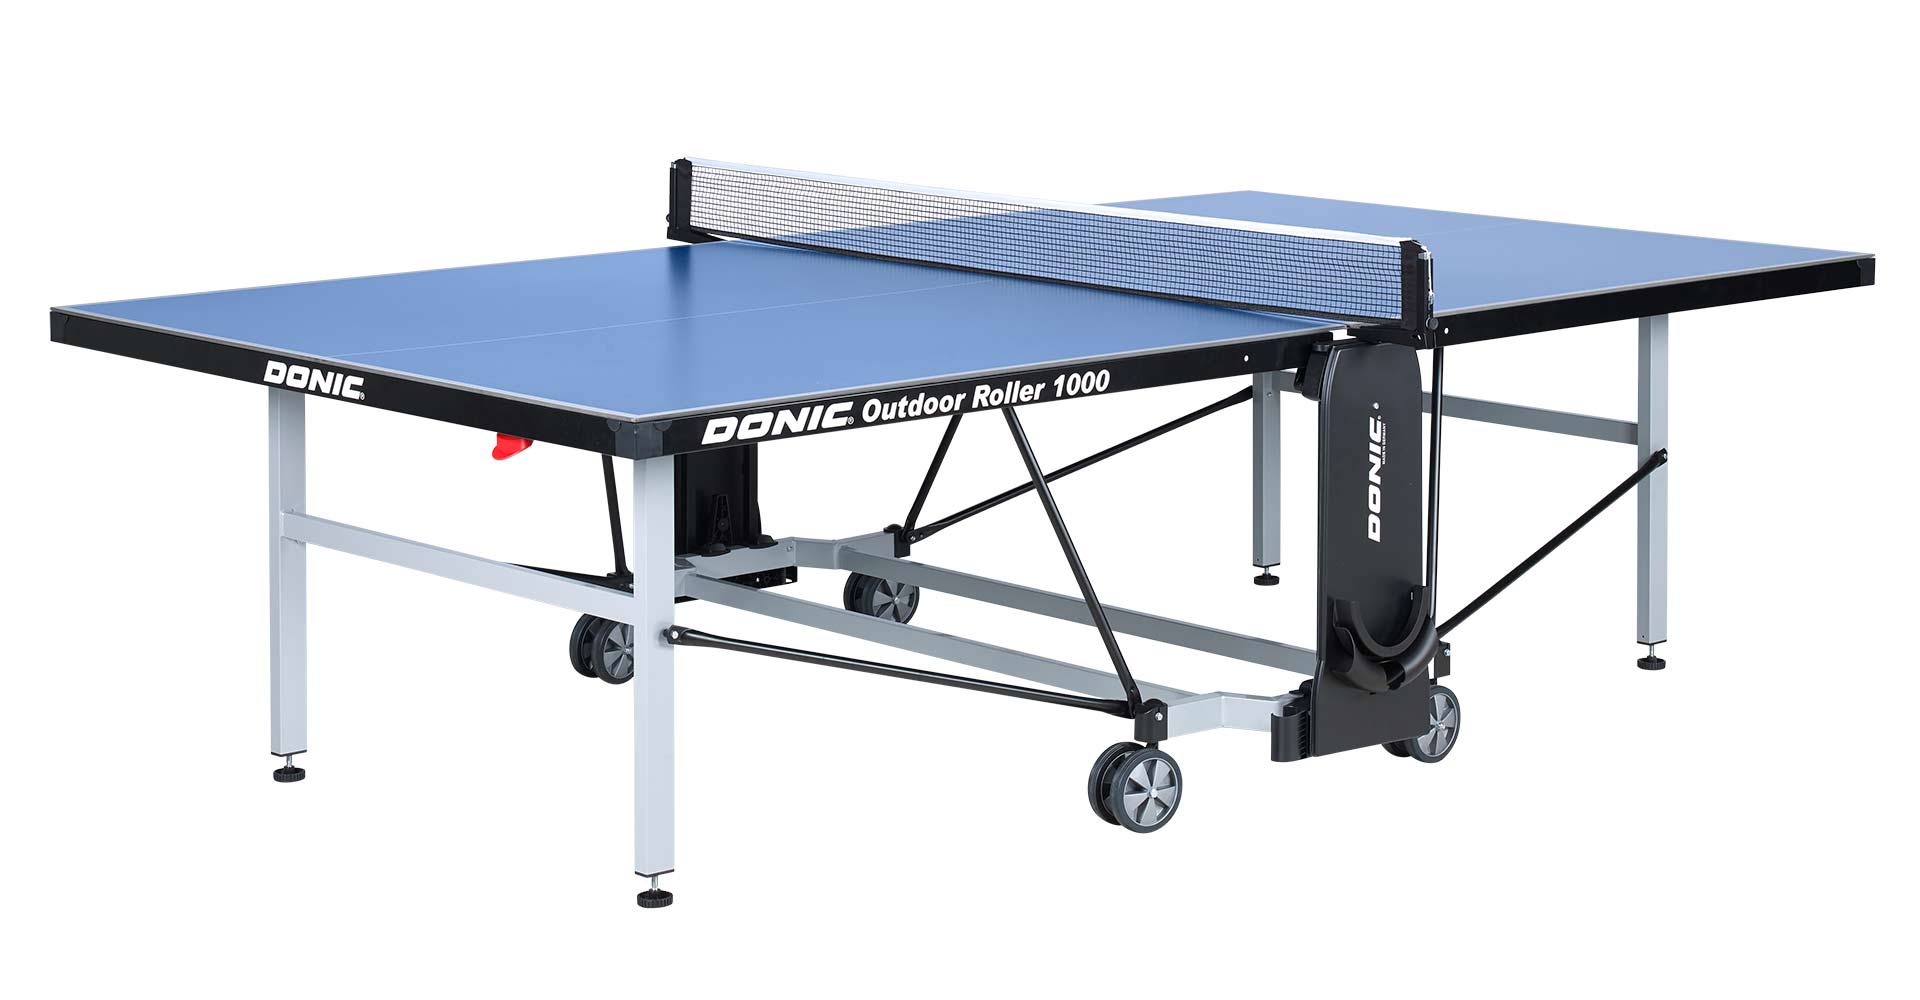 Tischtennis-Tisch DONIC Outdoor Roller 1000, blau